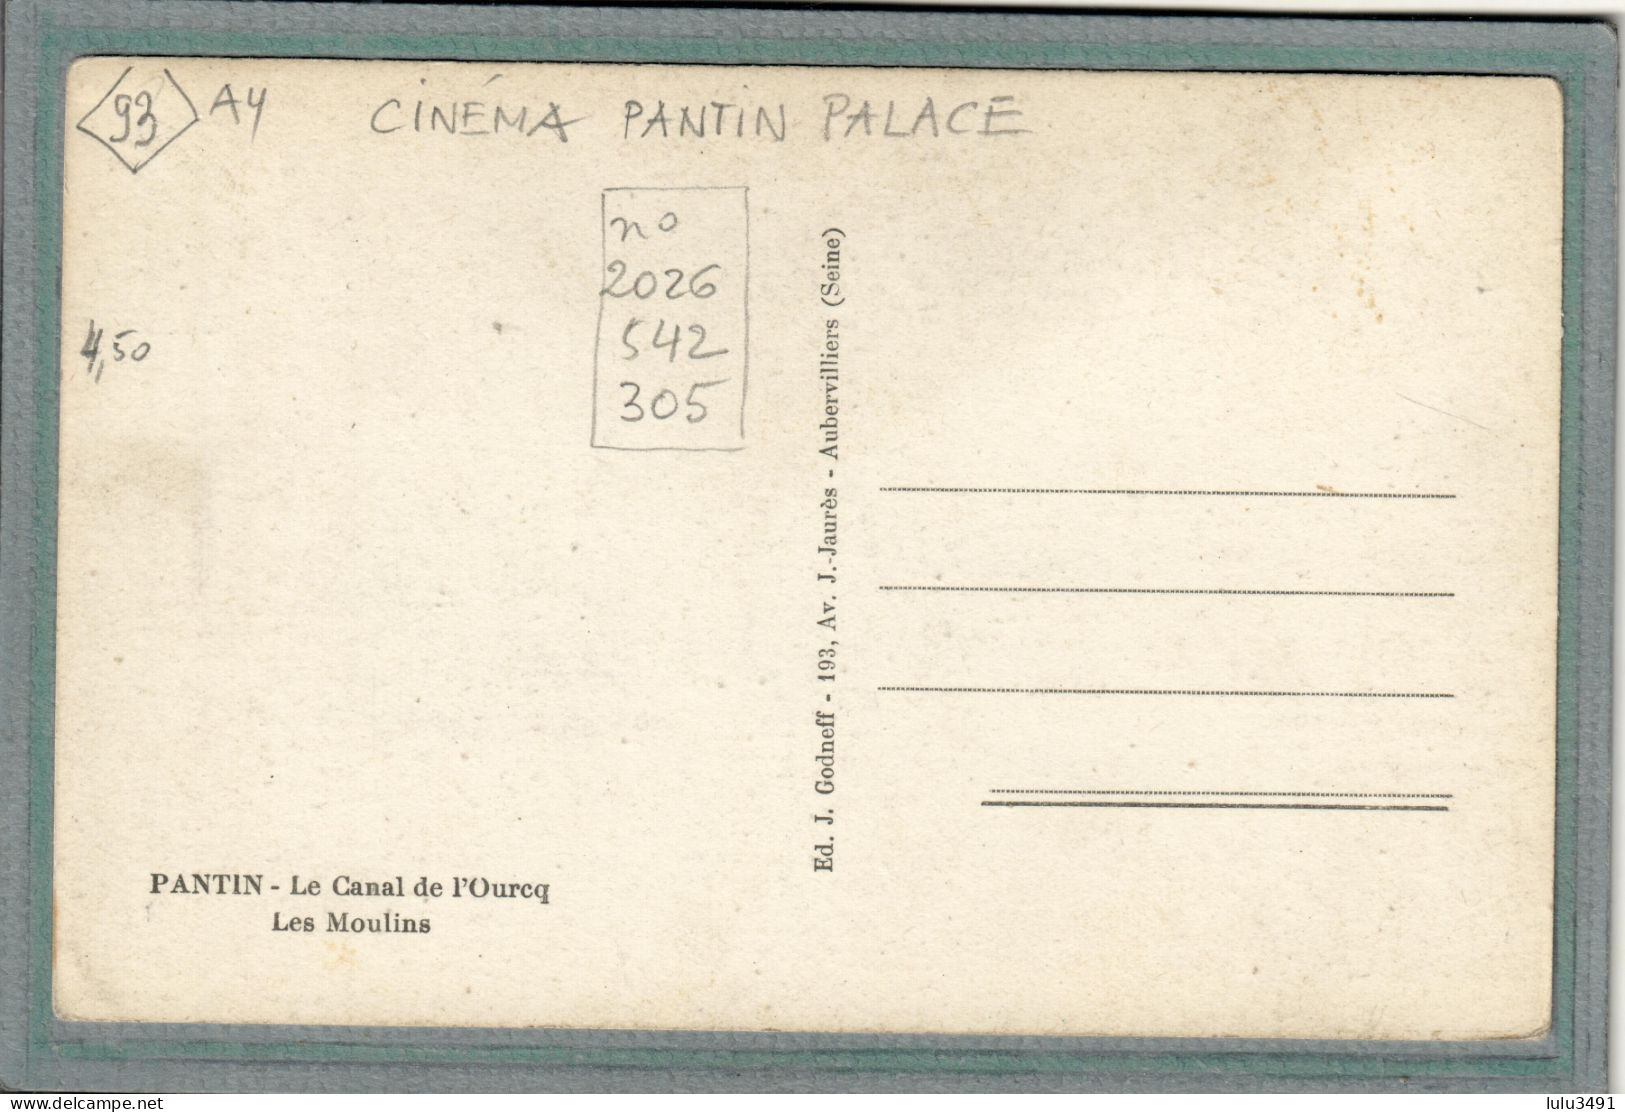 CPA (93) PANTIN - Thème: CINEMA PANTIN PALACE - Canal De L'Ourcq Et Moulins  - 1930 - Pantin